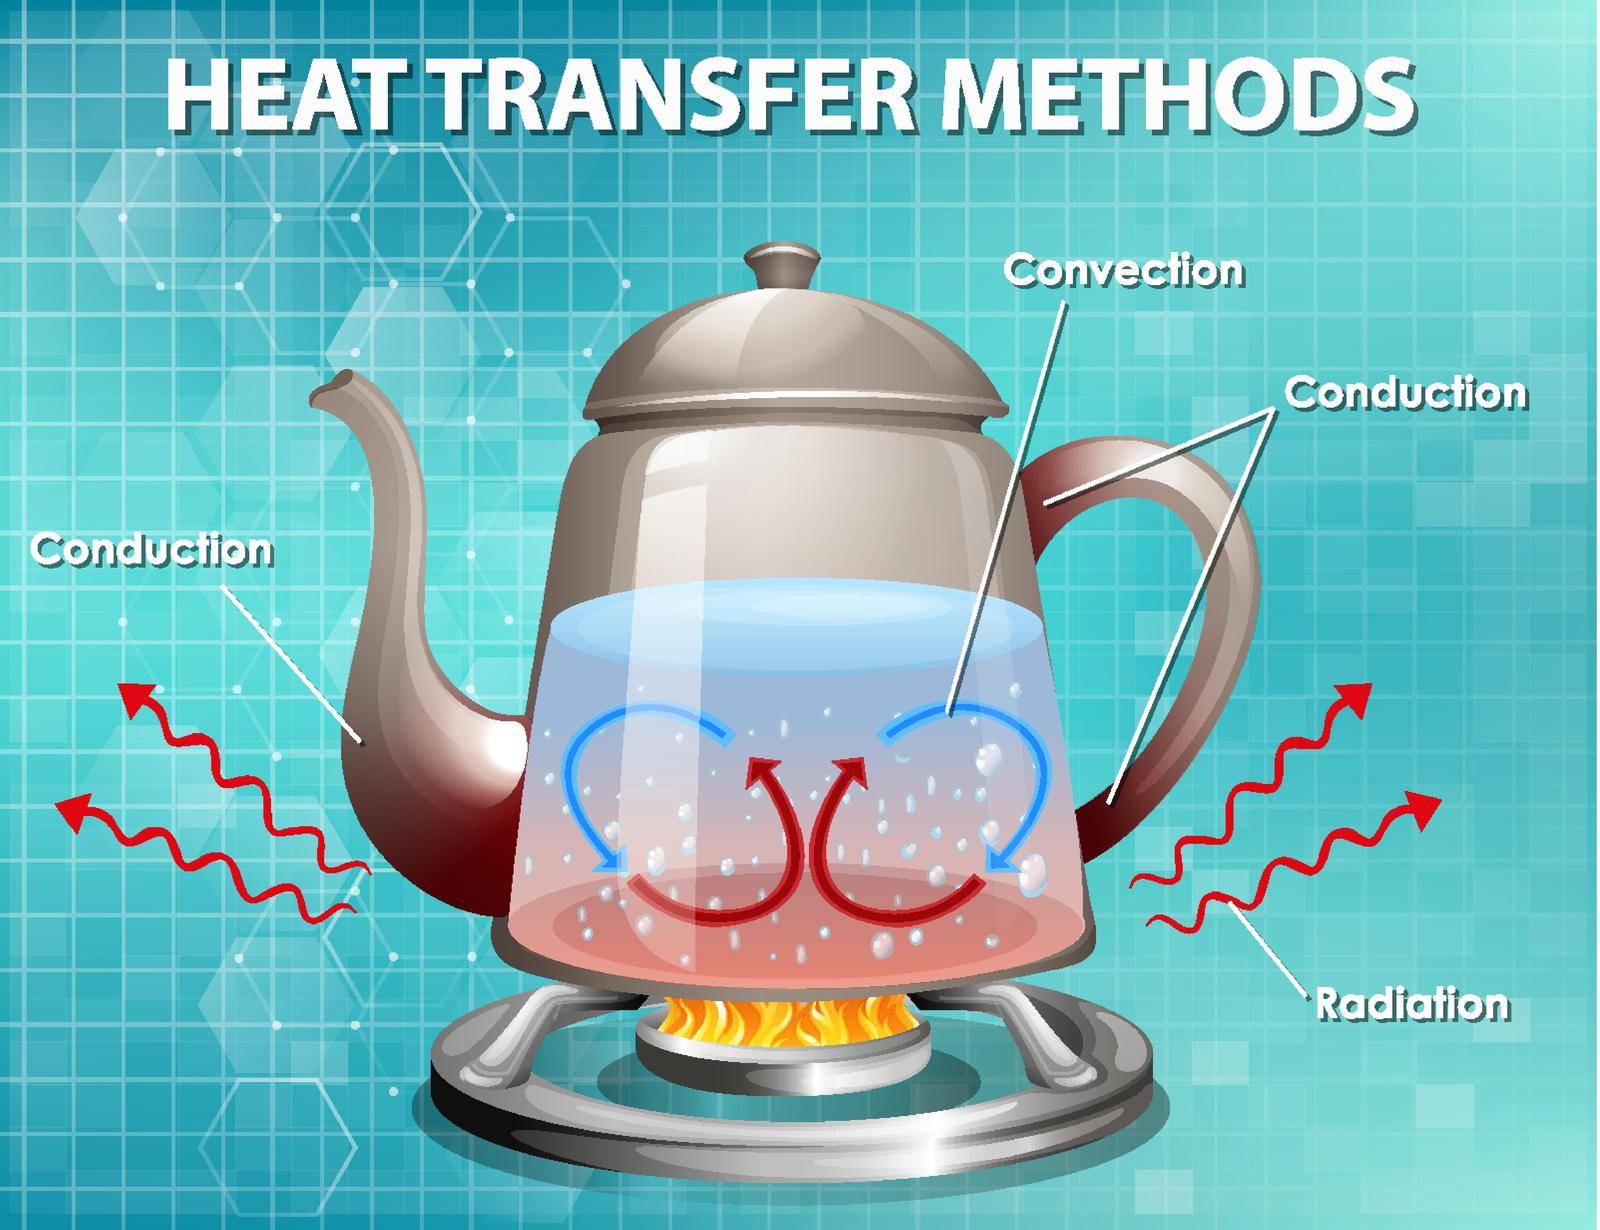 Methods of heat transfer by iimages